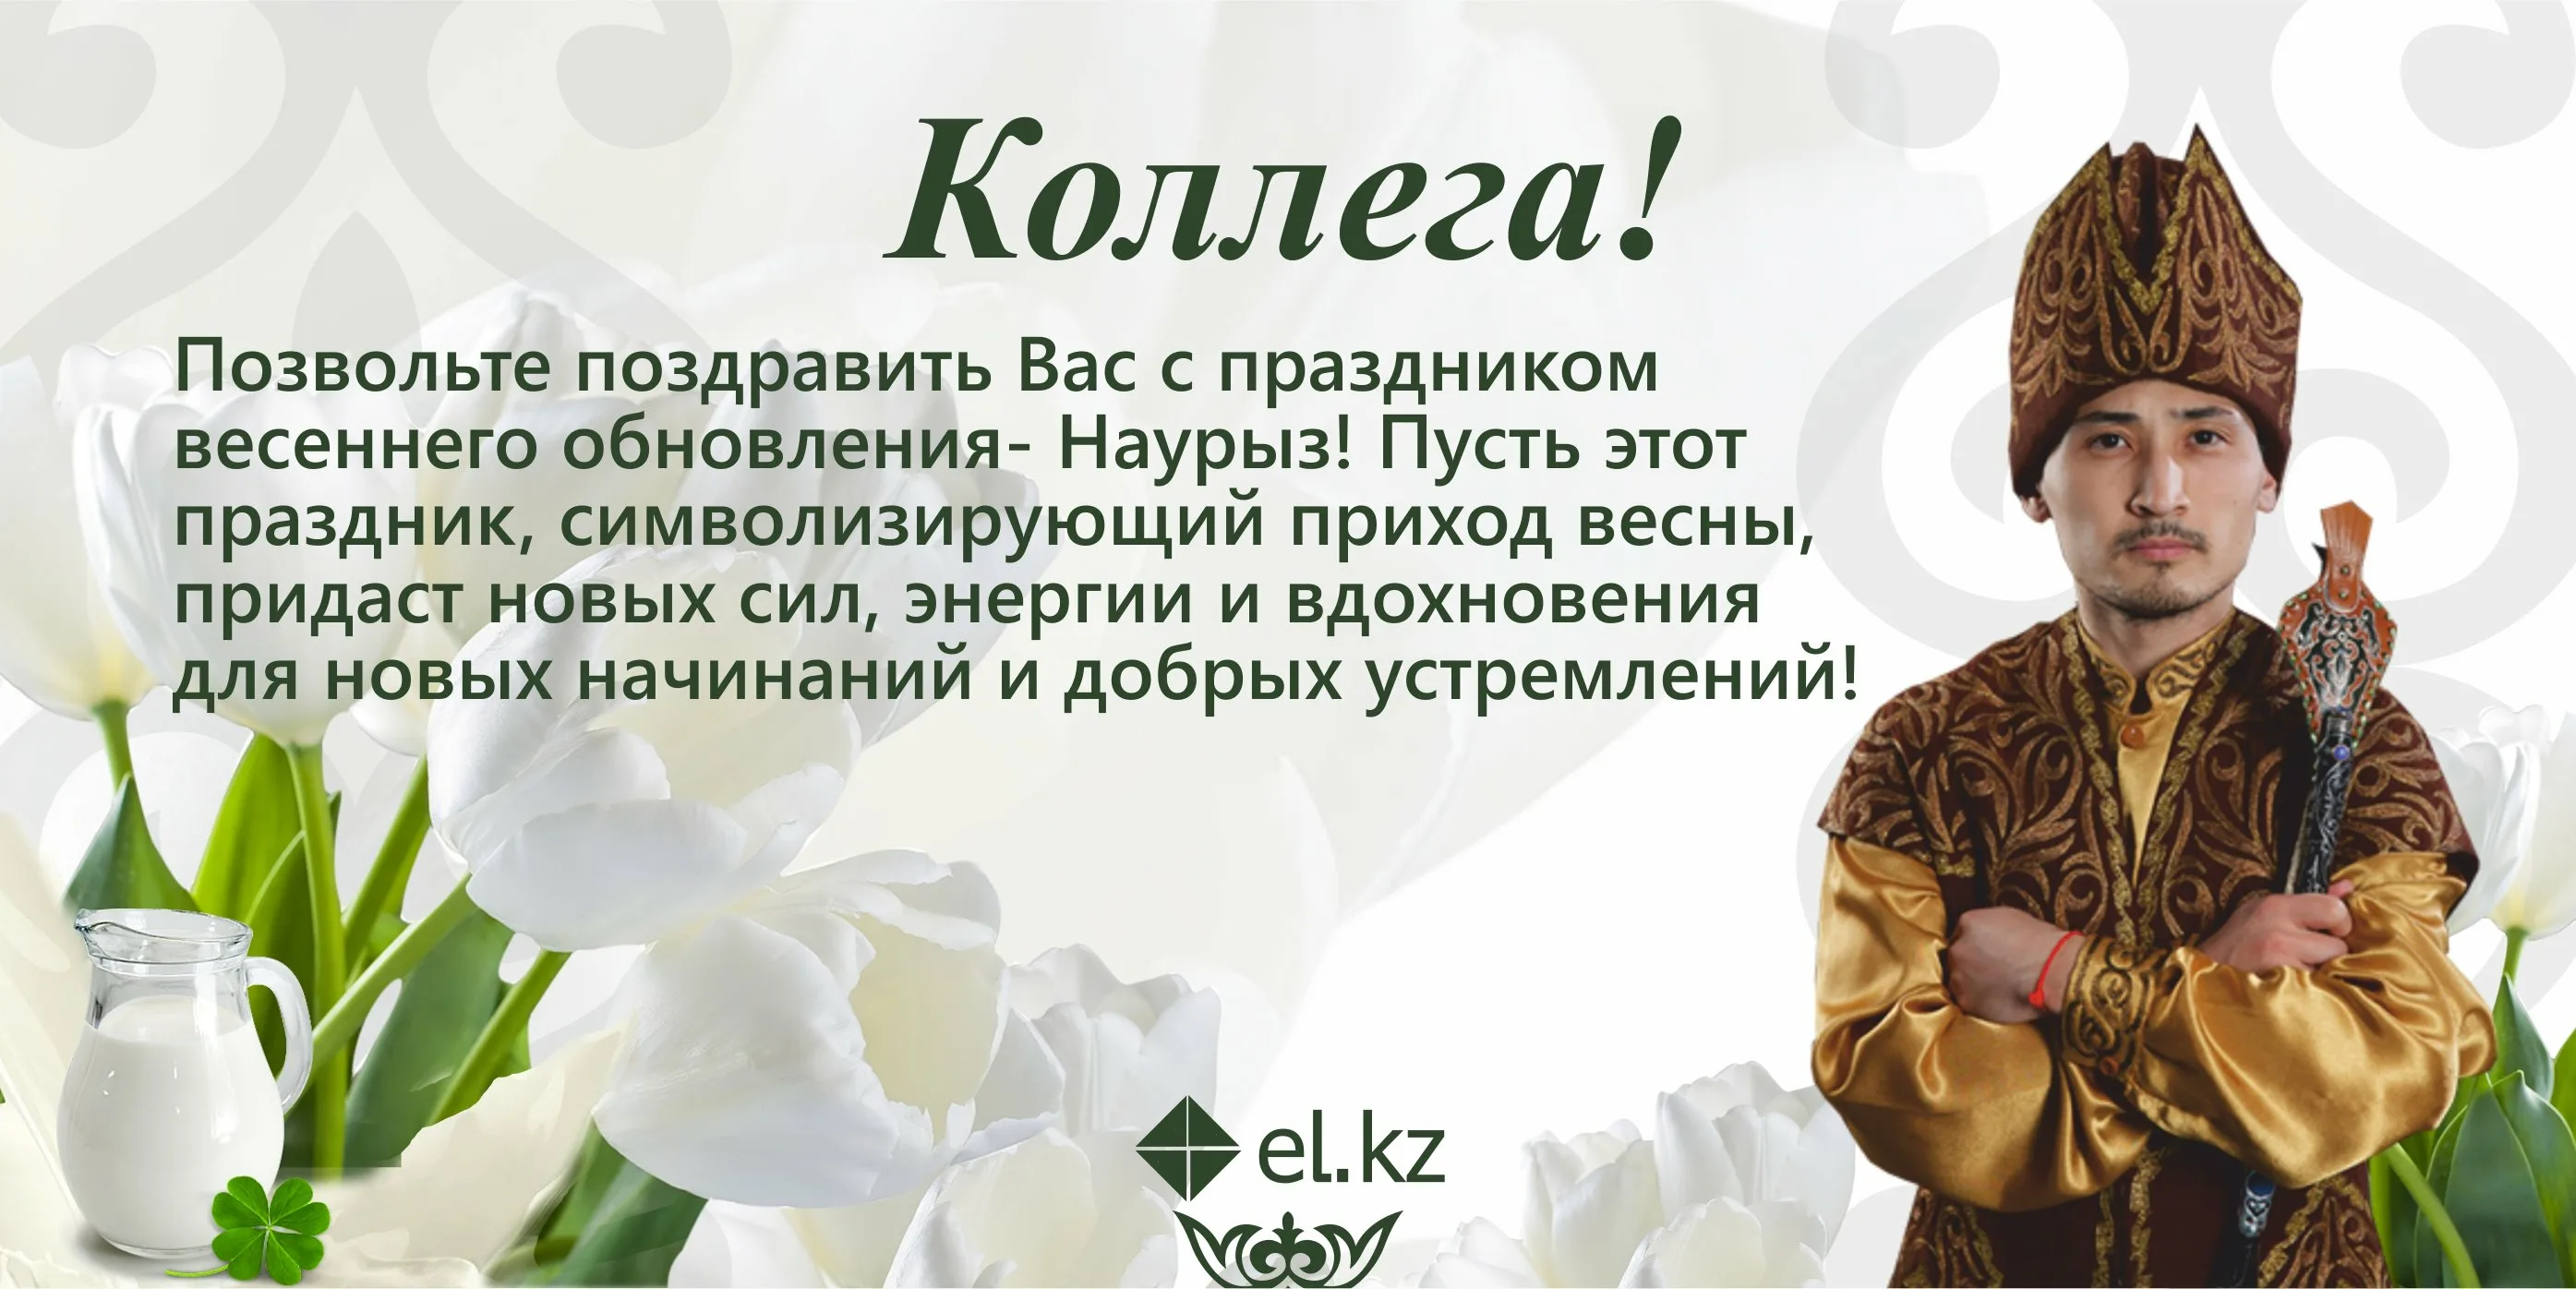 Наурыз кутты болсын что ответить. Наурыз поздравление. Поздравление на казахском. Поздравление с Наурызом на казахском. Наурыз открытки с поздравлениями на казахском языке.